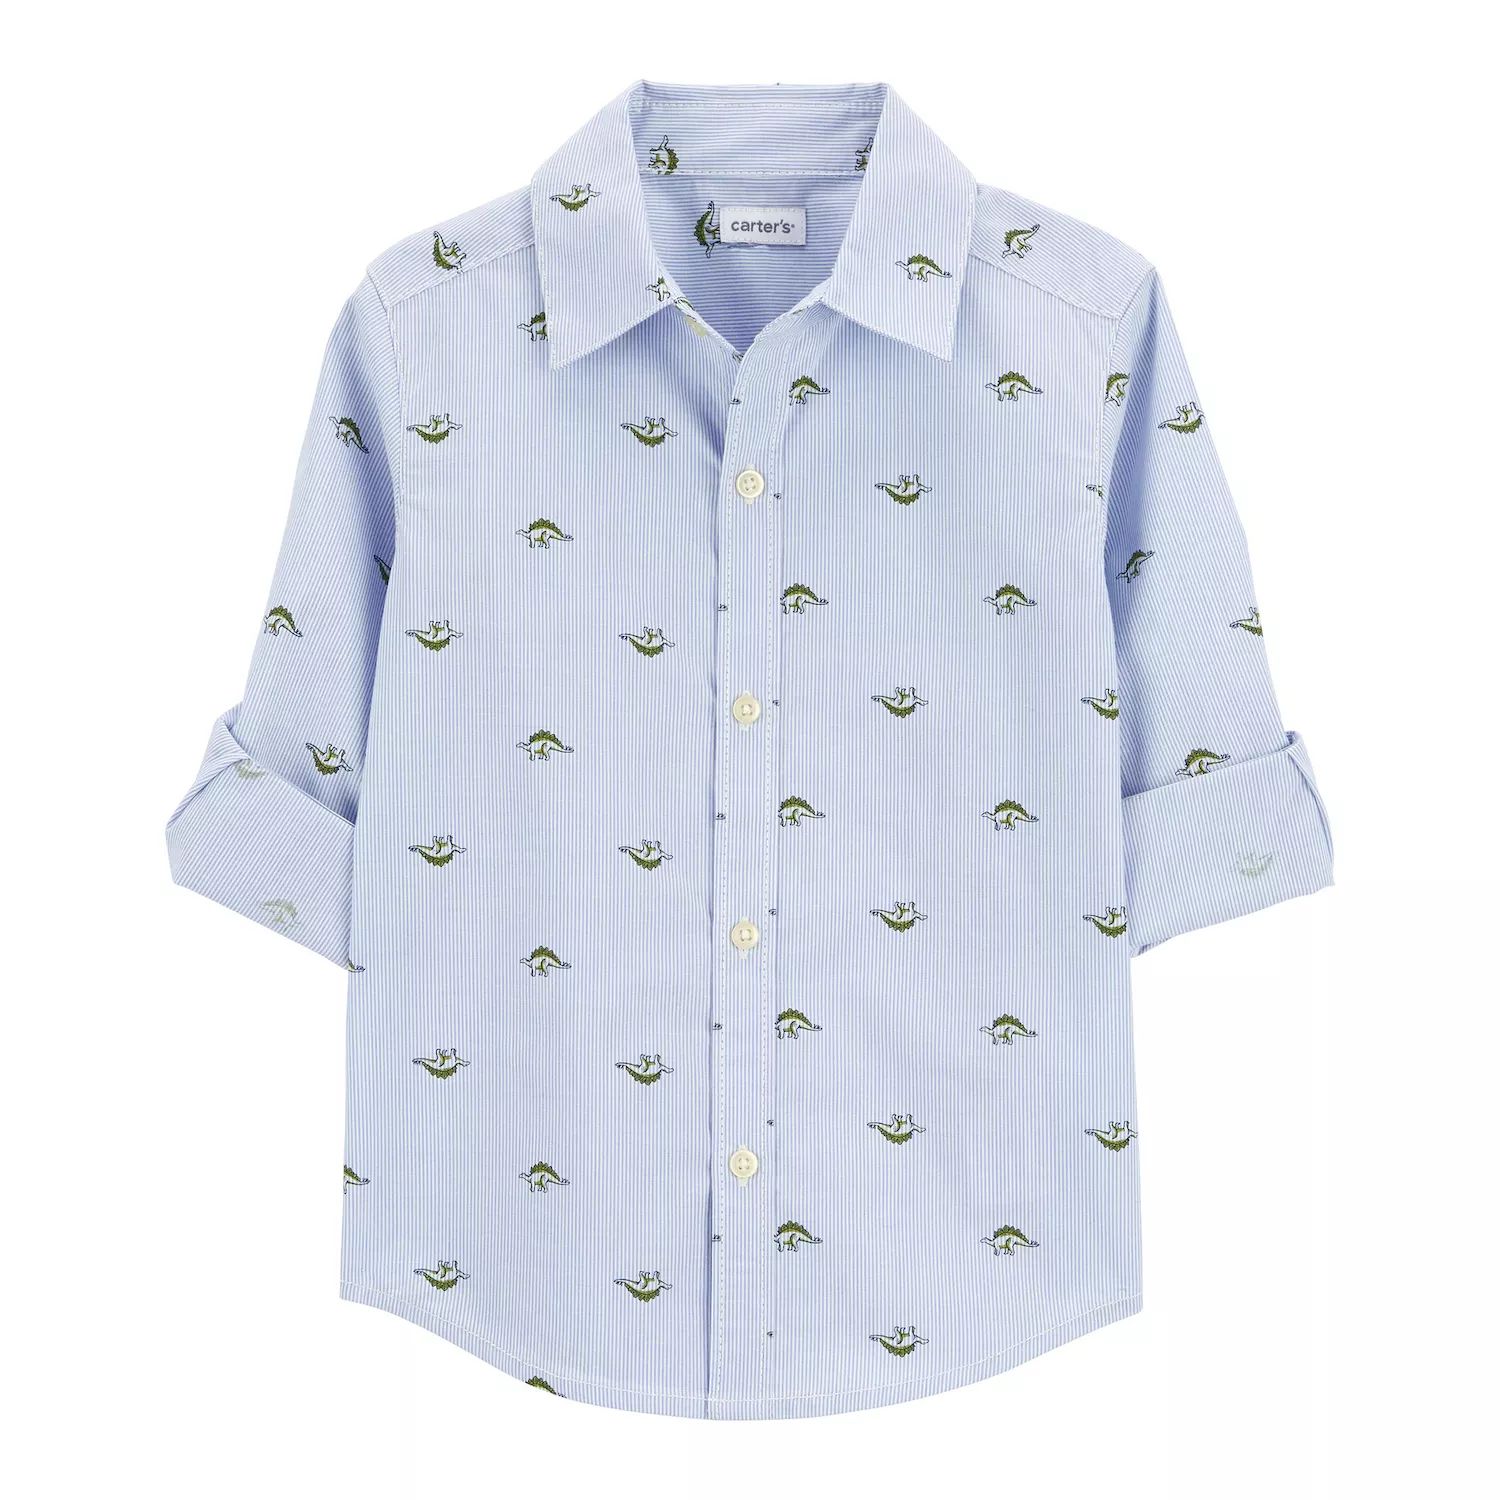 цена Рубашка на пуговицах с динозавром Carter для маленьких мальчиков Carter's